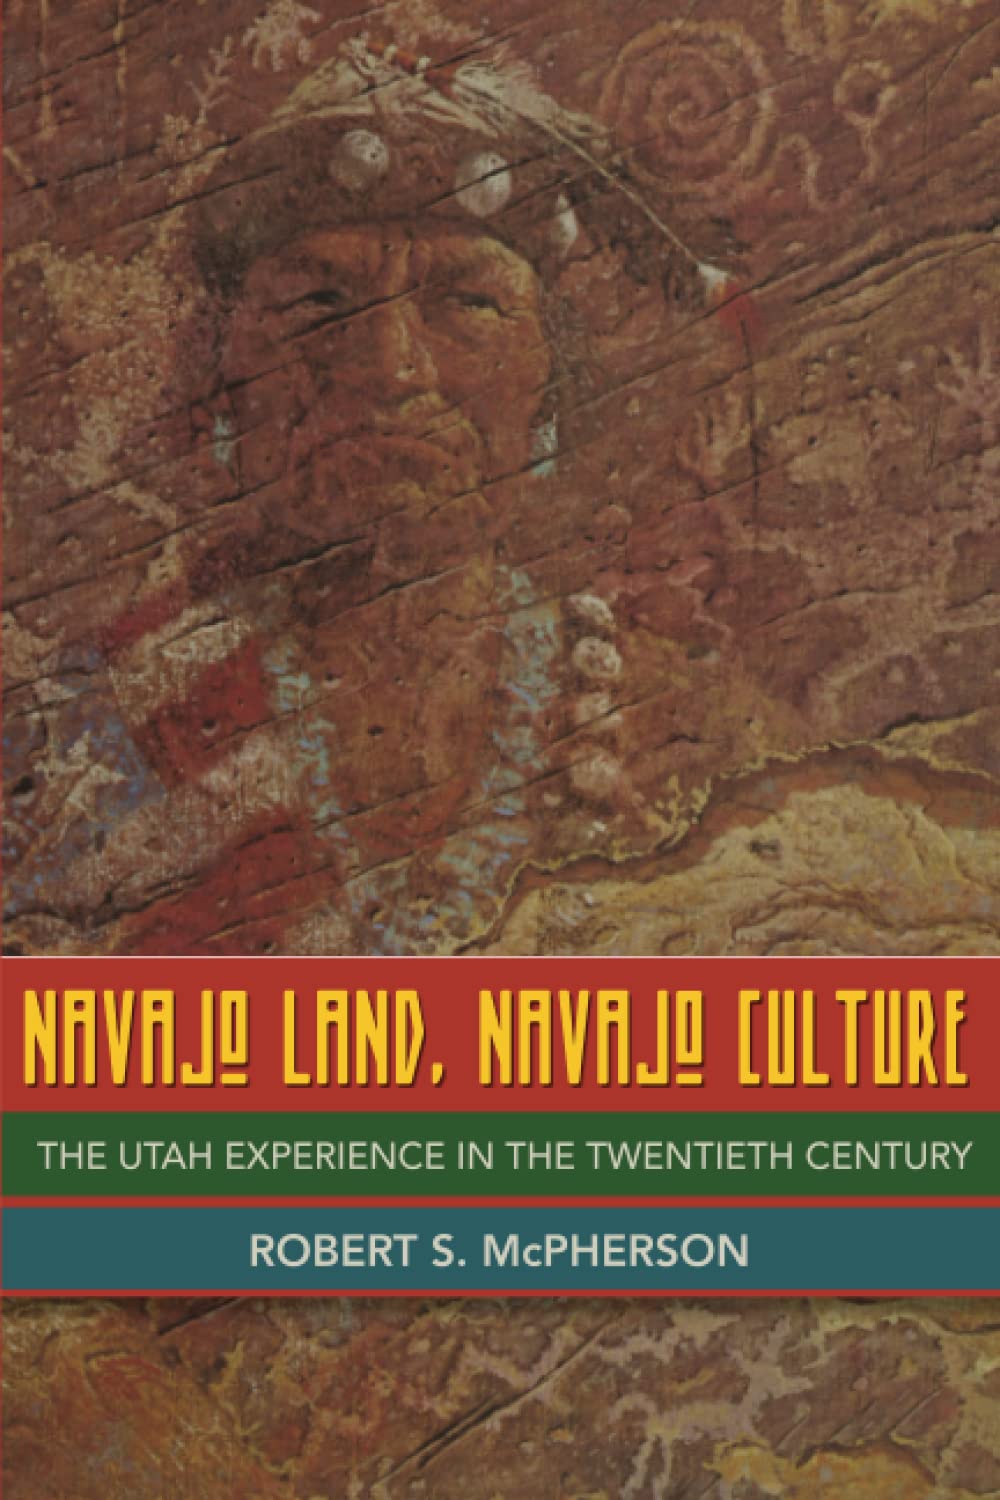 Navajo Land, Navajo Culture: Utah Experience in the 20th Century-Indian Pueblo Store